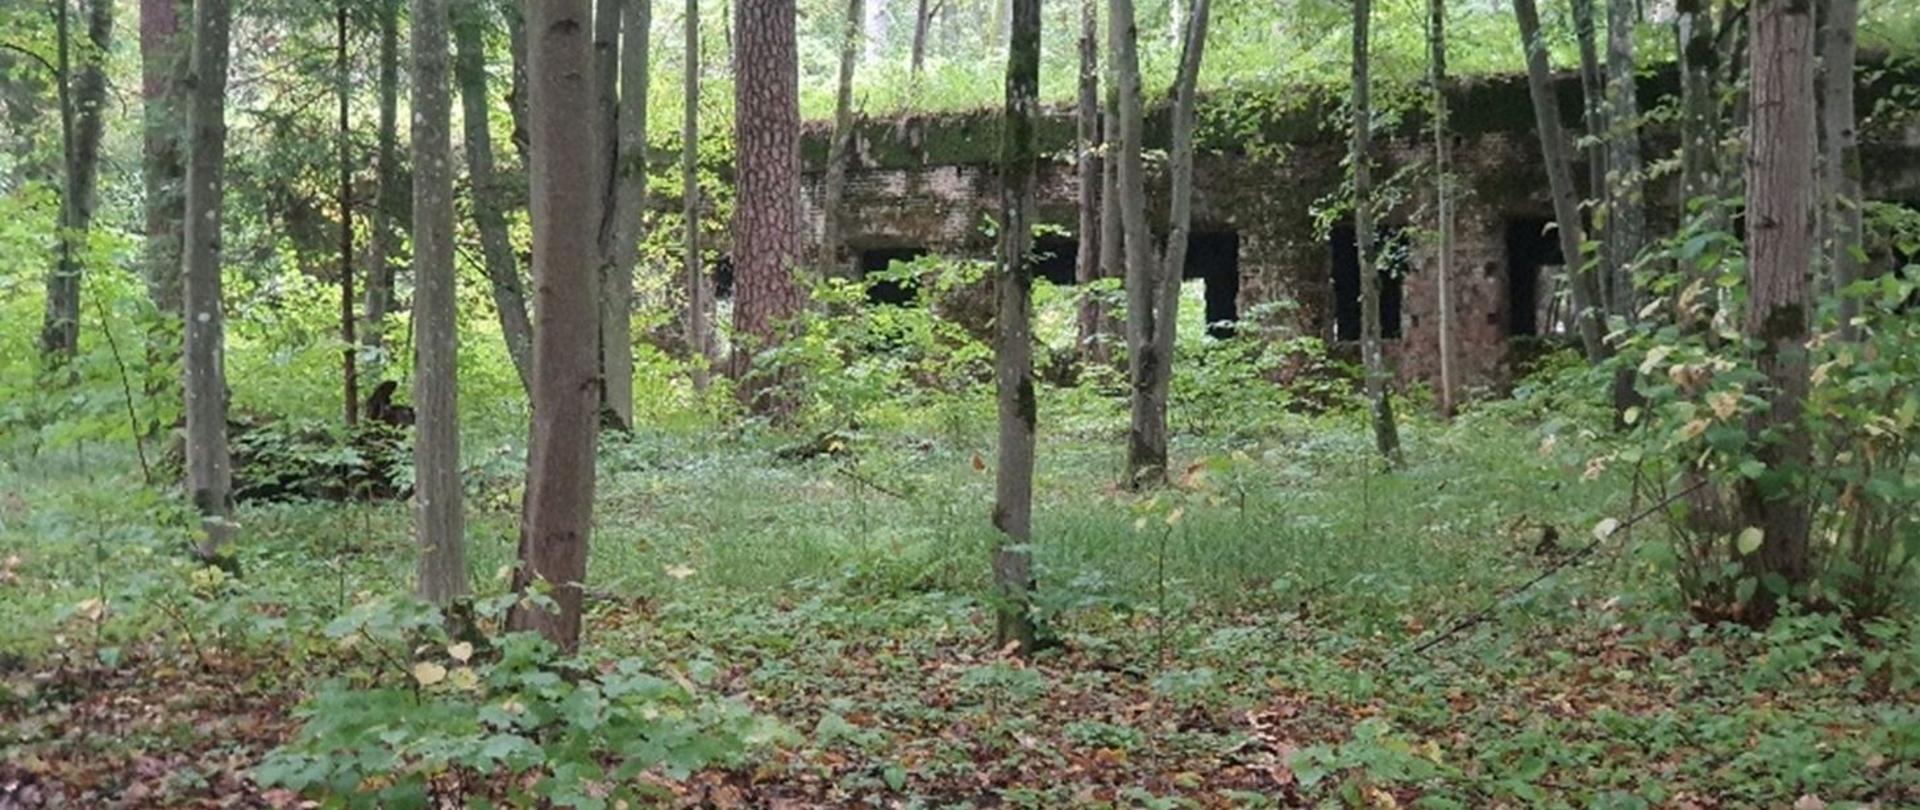 Na pierwszym planie znajdują się drzewa w lesie. W oddali widać ruiny bunkra z II wojny światowej.